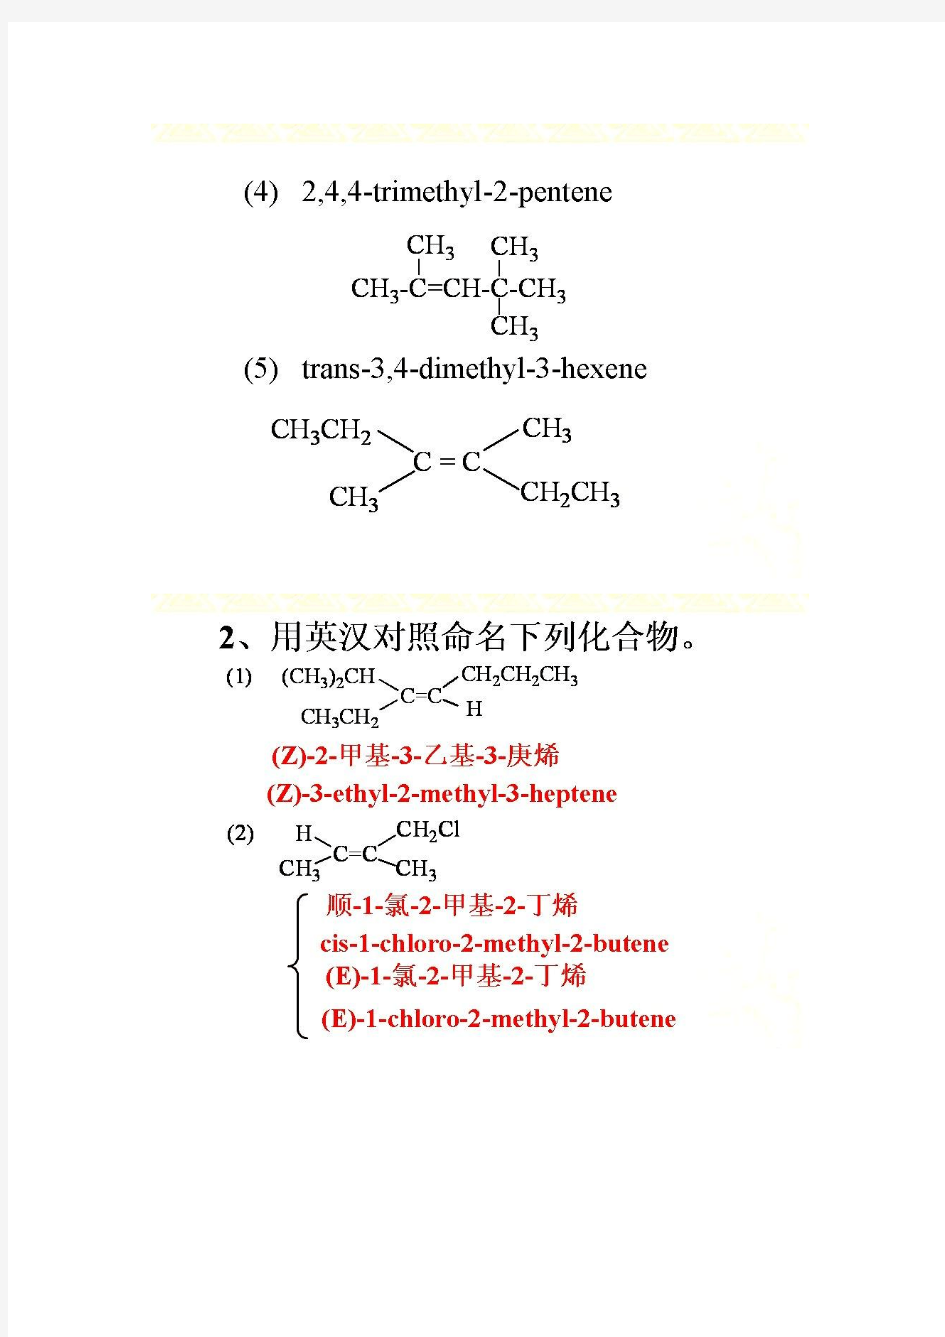 王积涛有机化学第三版答案 第4章 烯烃